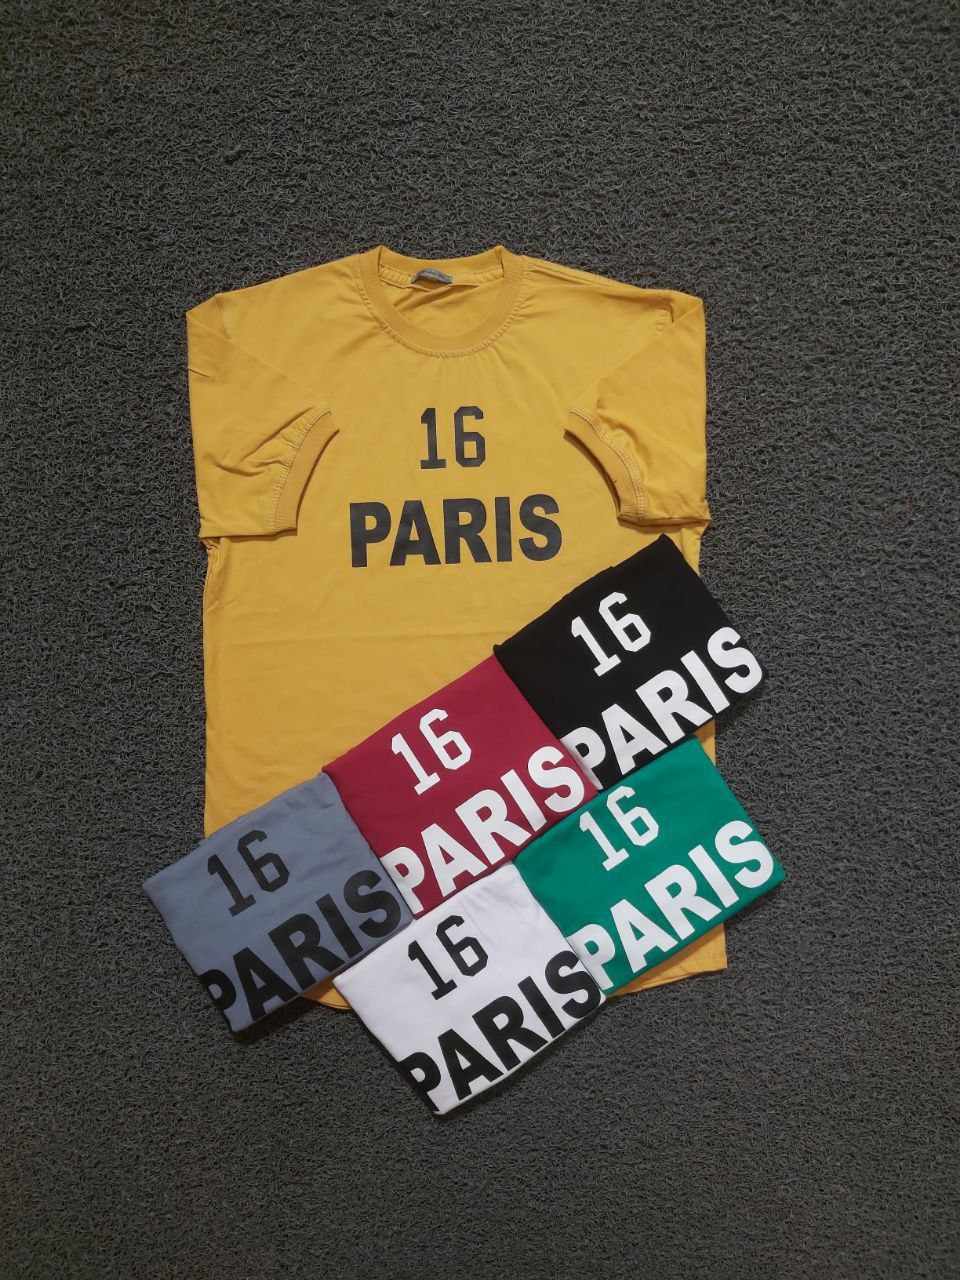 تیشرت سایز L,XL,2XL جنس پنبه سوپر طرح 16 PARIS دارای رنگ بندی